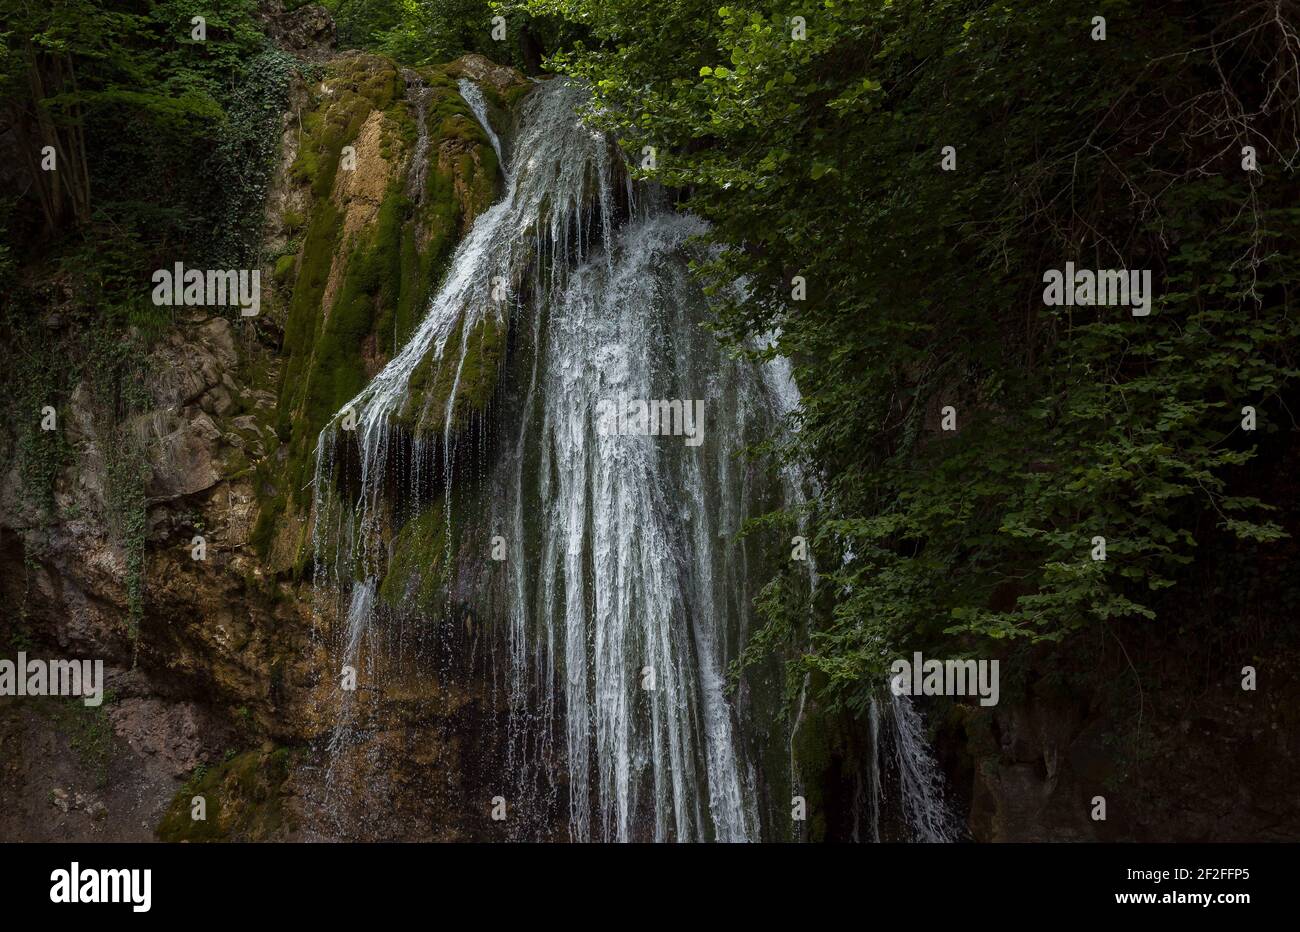 Djur-Djur Wasserfall in der Khapkhal Schlucht auf der Krim. Stockfoto